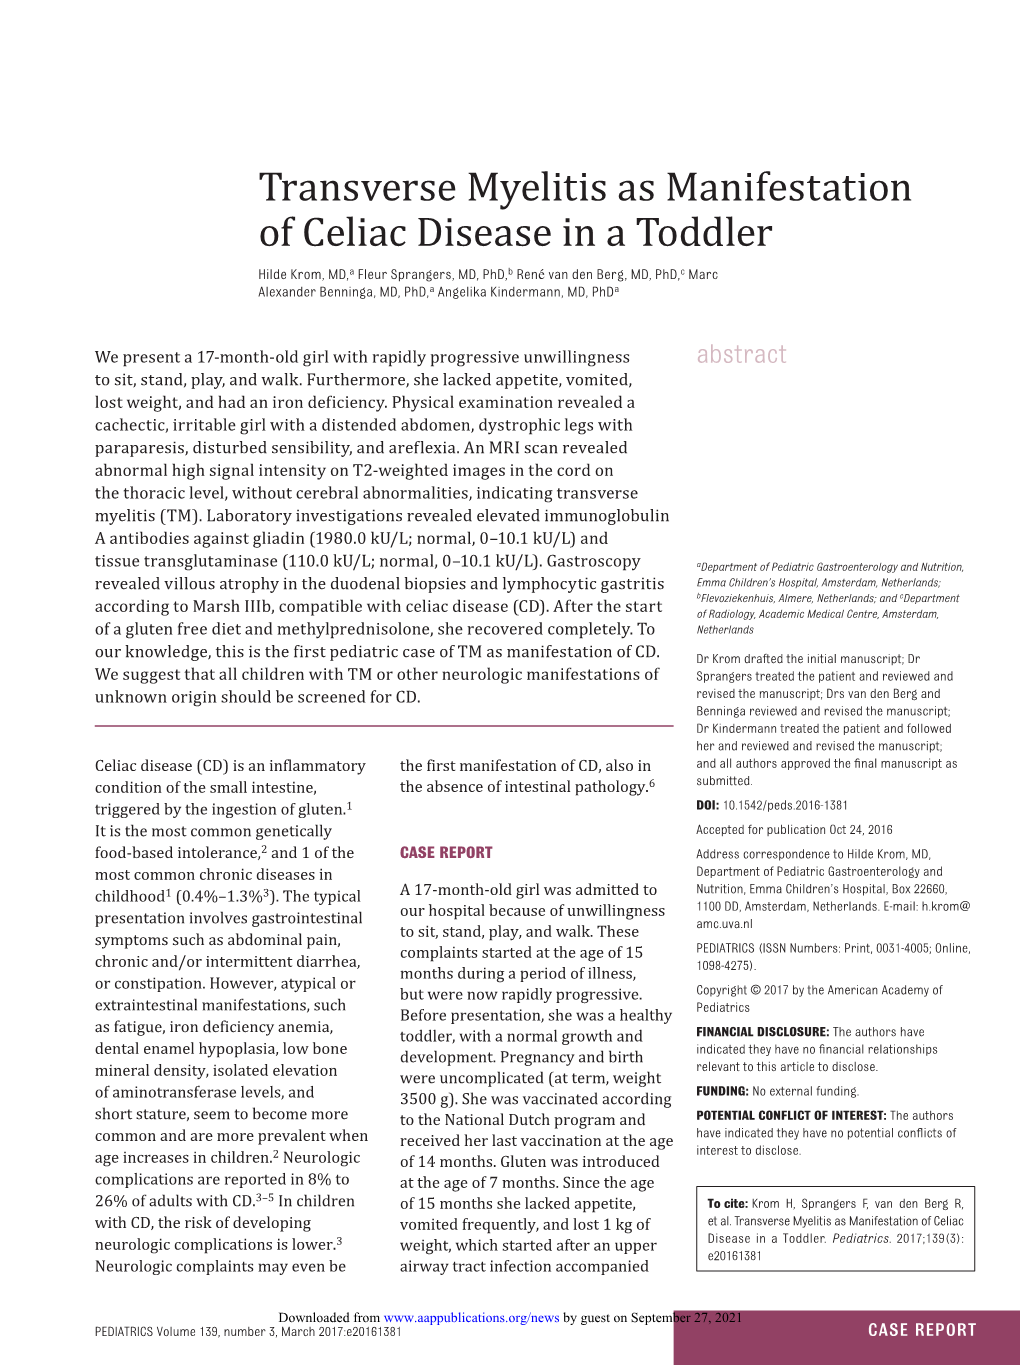 Transverse Myelitis As Manifestation of Celiac Disease in a Toddler